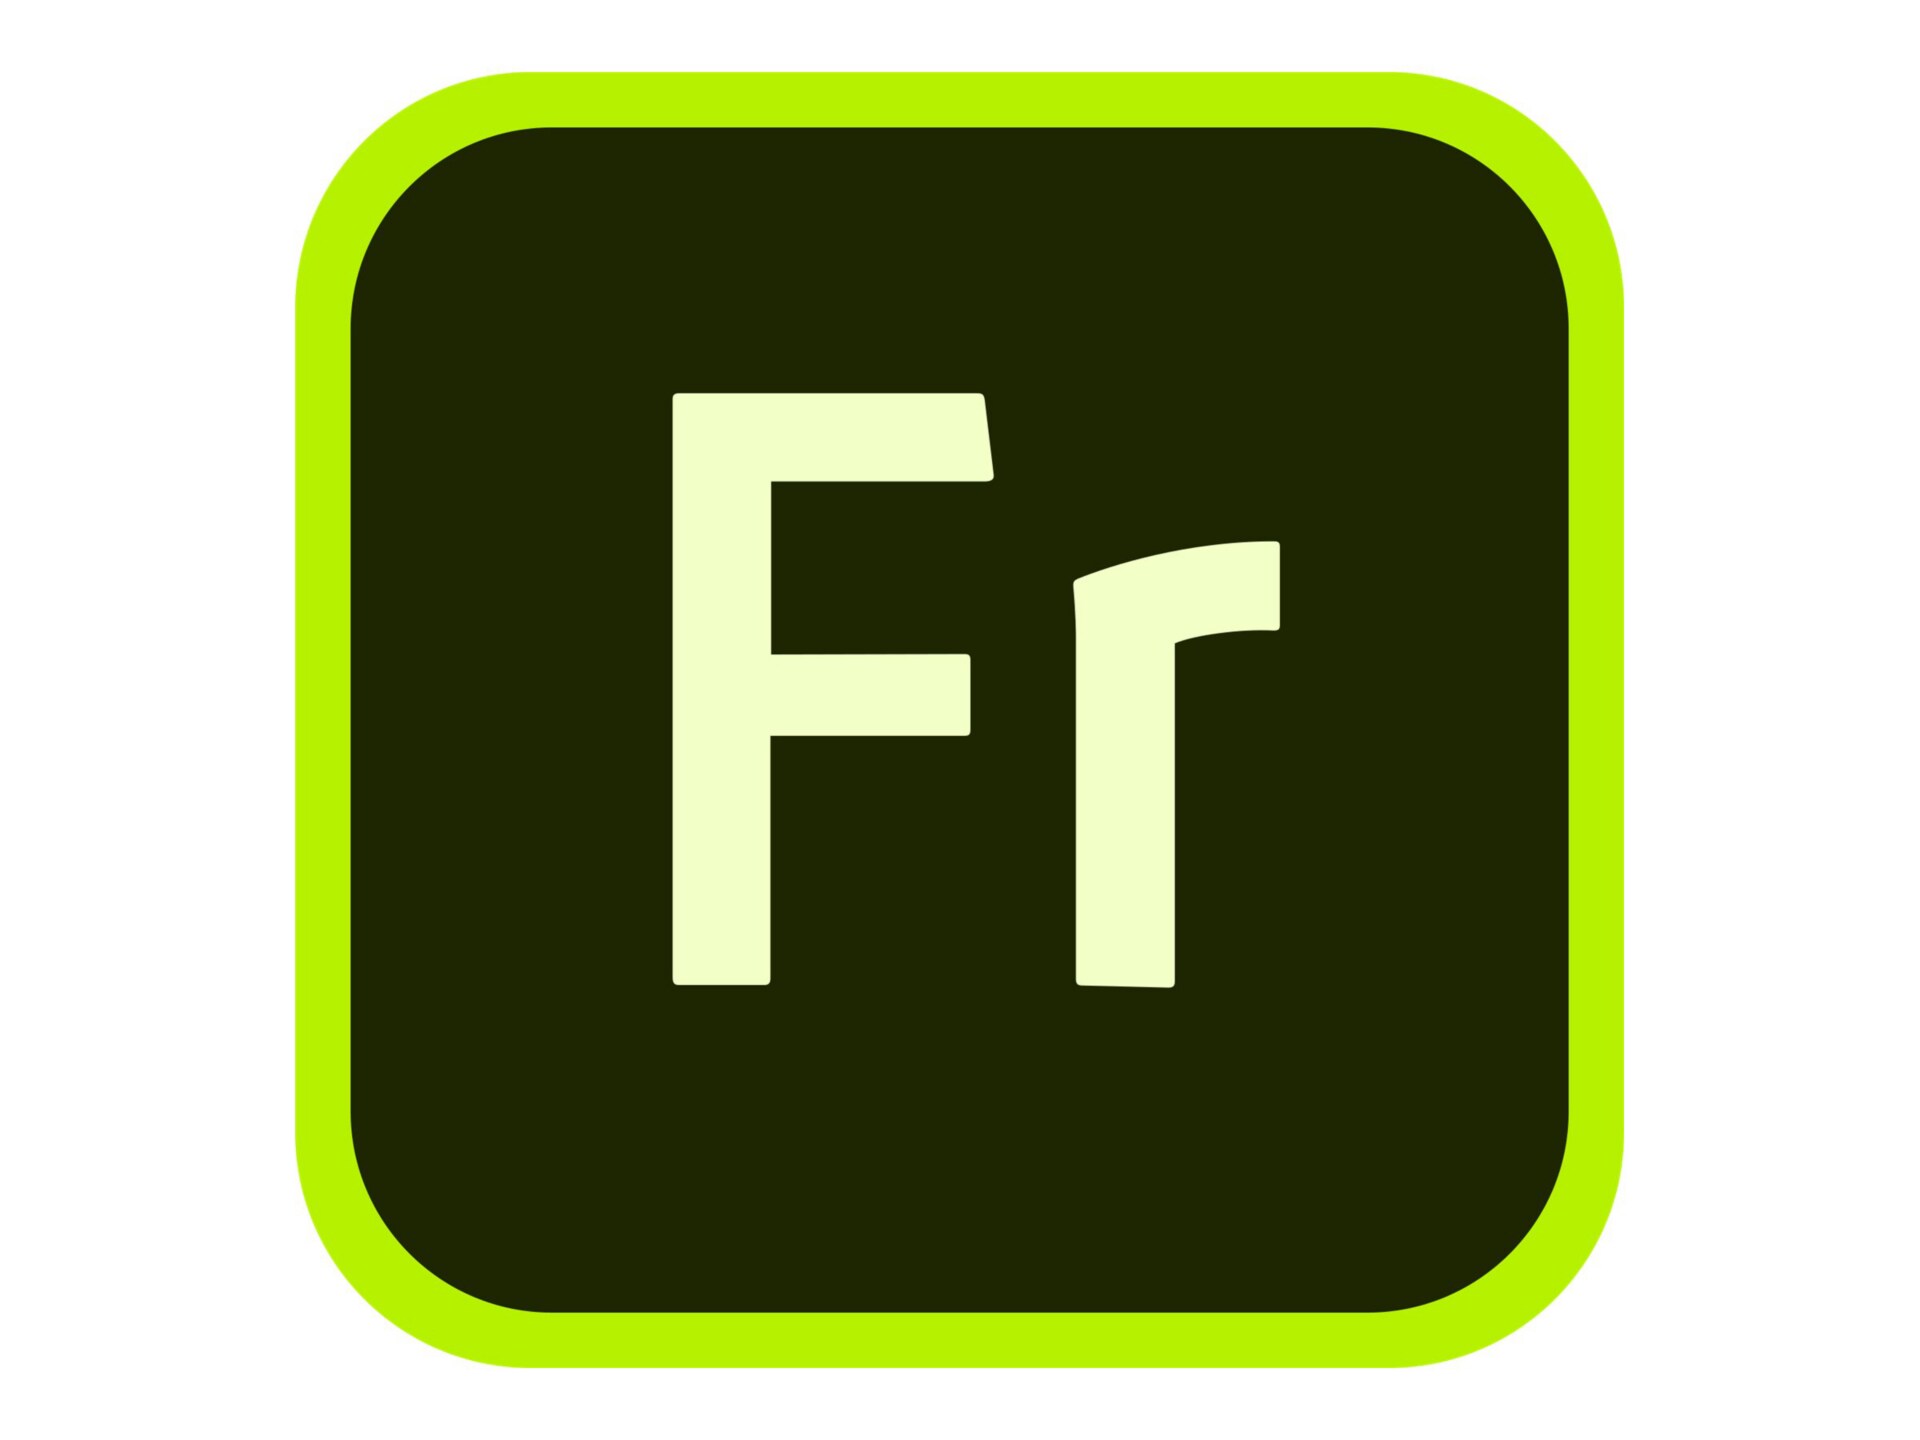 Adobe Fresco for enterprise - Subscription New (42 months) - 1 named user